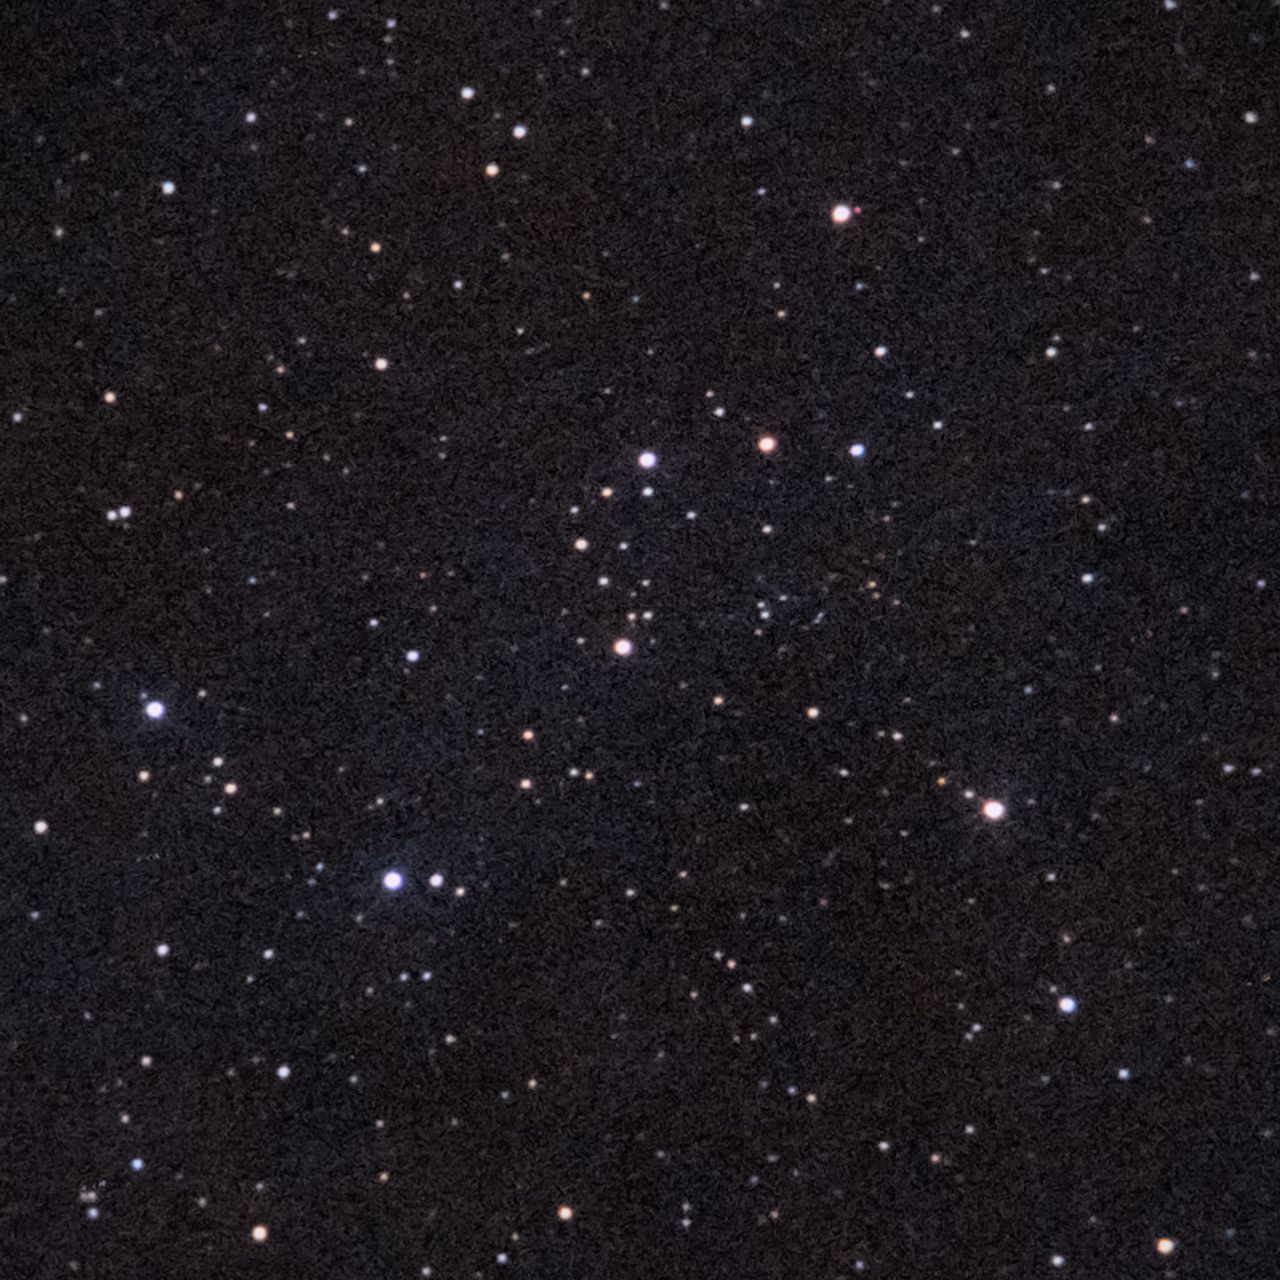 NGC956